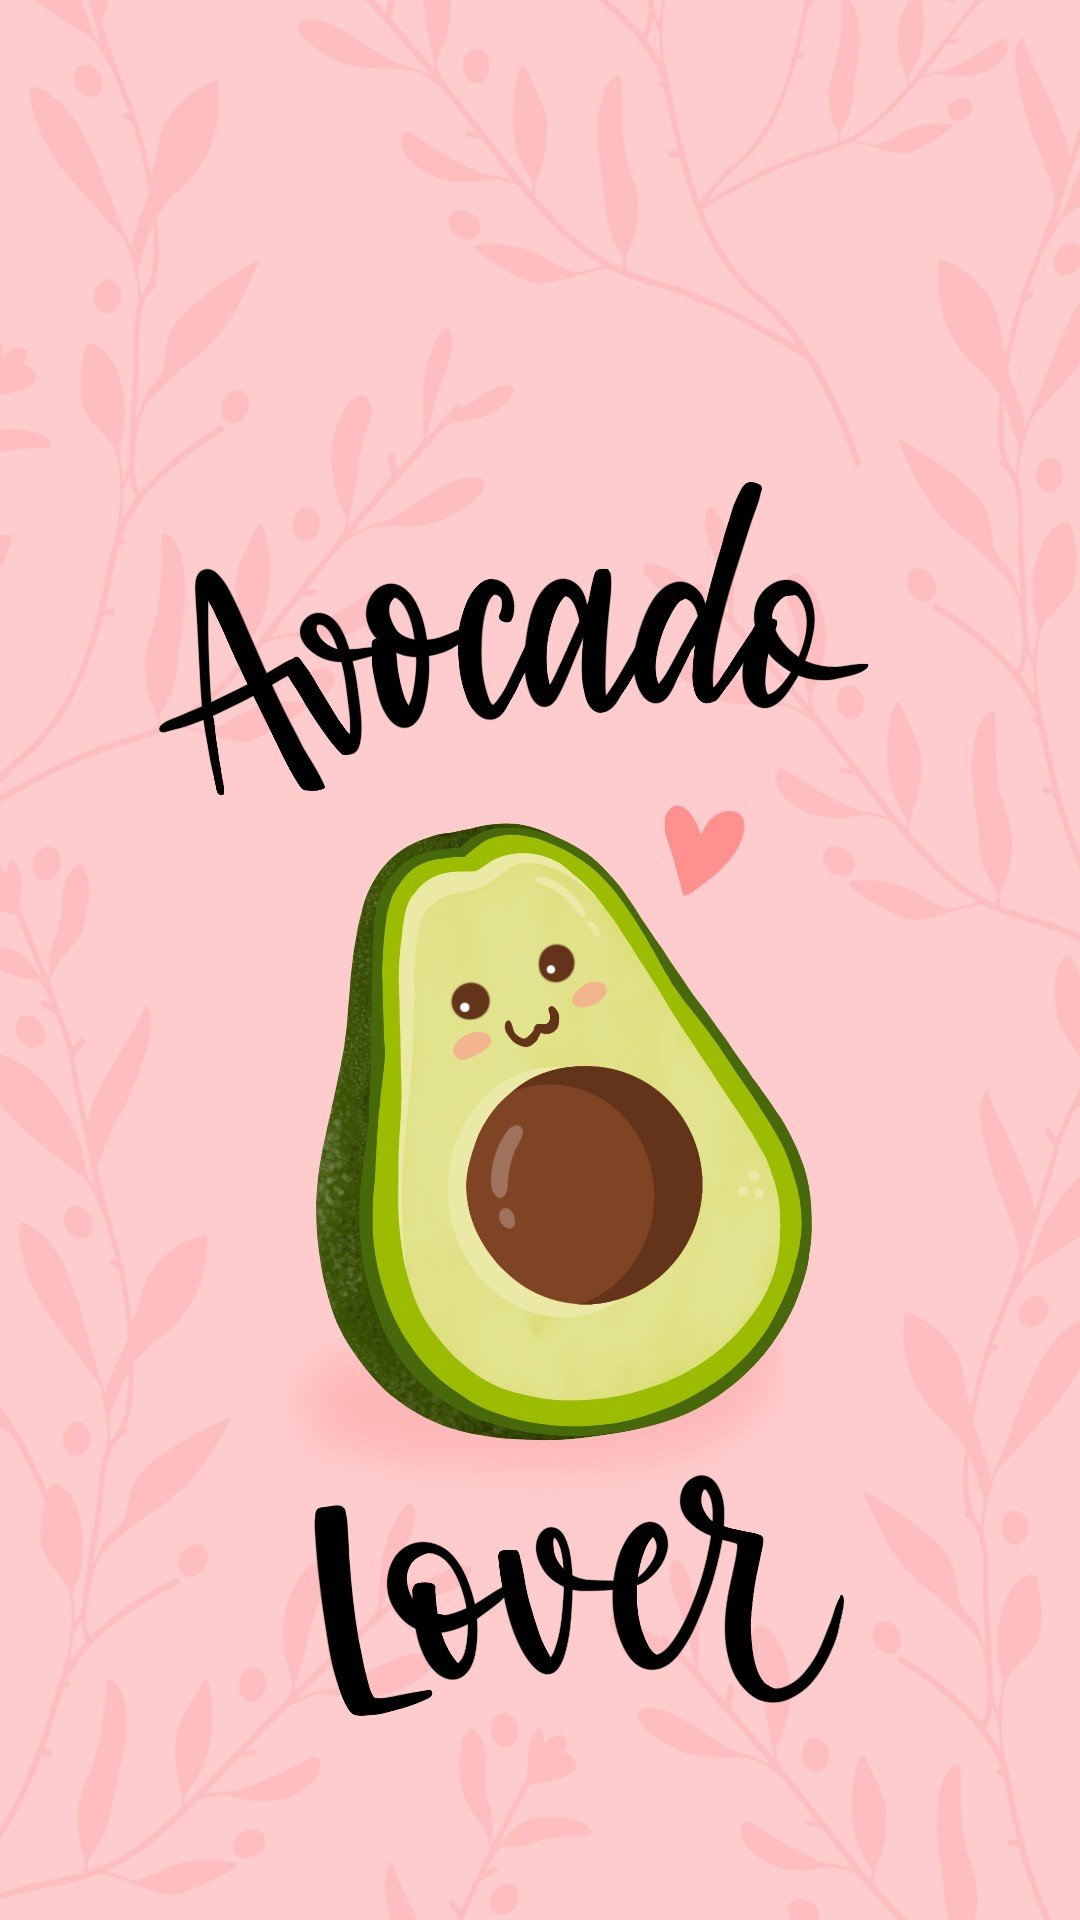 Обои на телефон — авокадо, картинки с милыми авокадо | Zamanilka